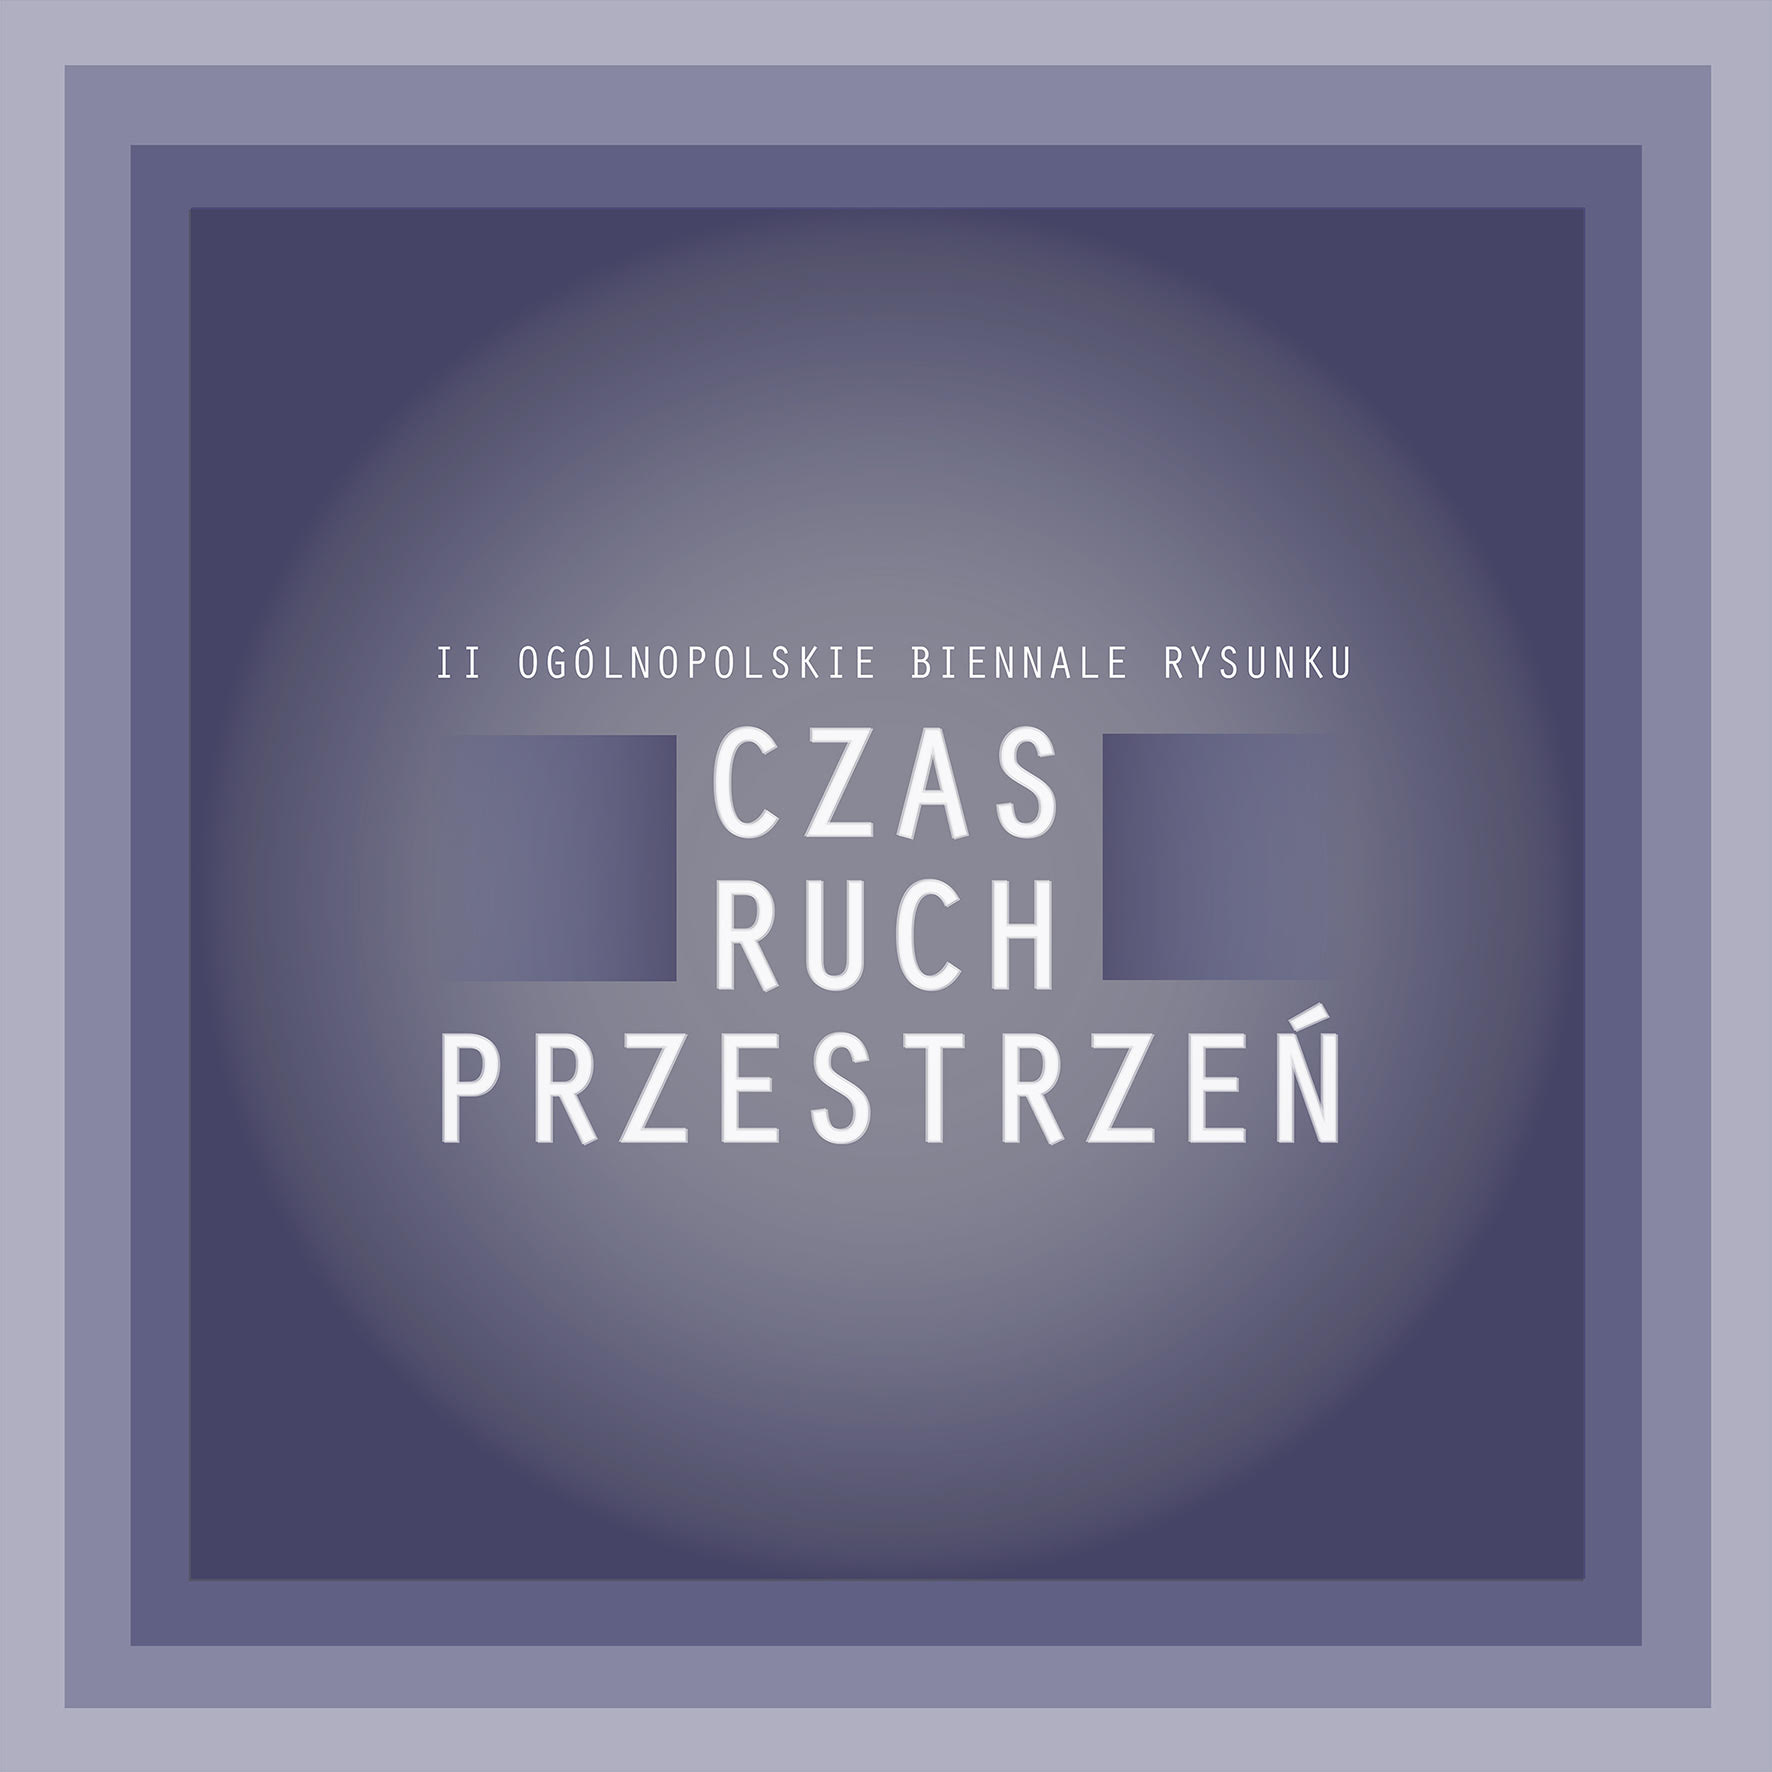 Zaproszenie na wystawę II Ogólnopolskie Biennale Rysunku CZAS RUCH PRZESTRZEŃ